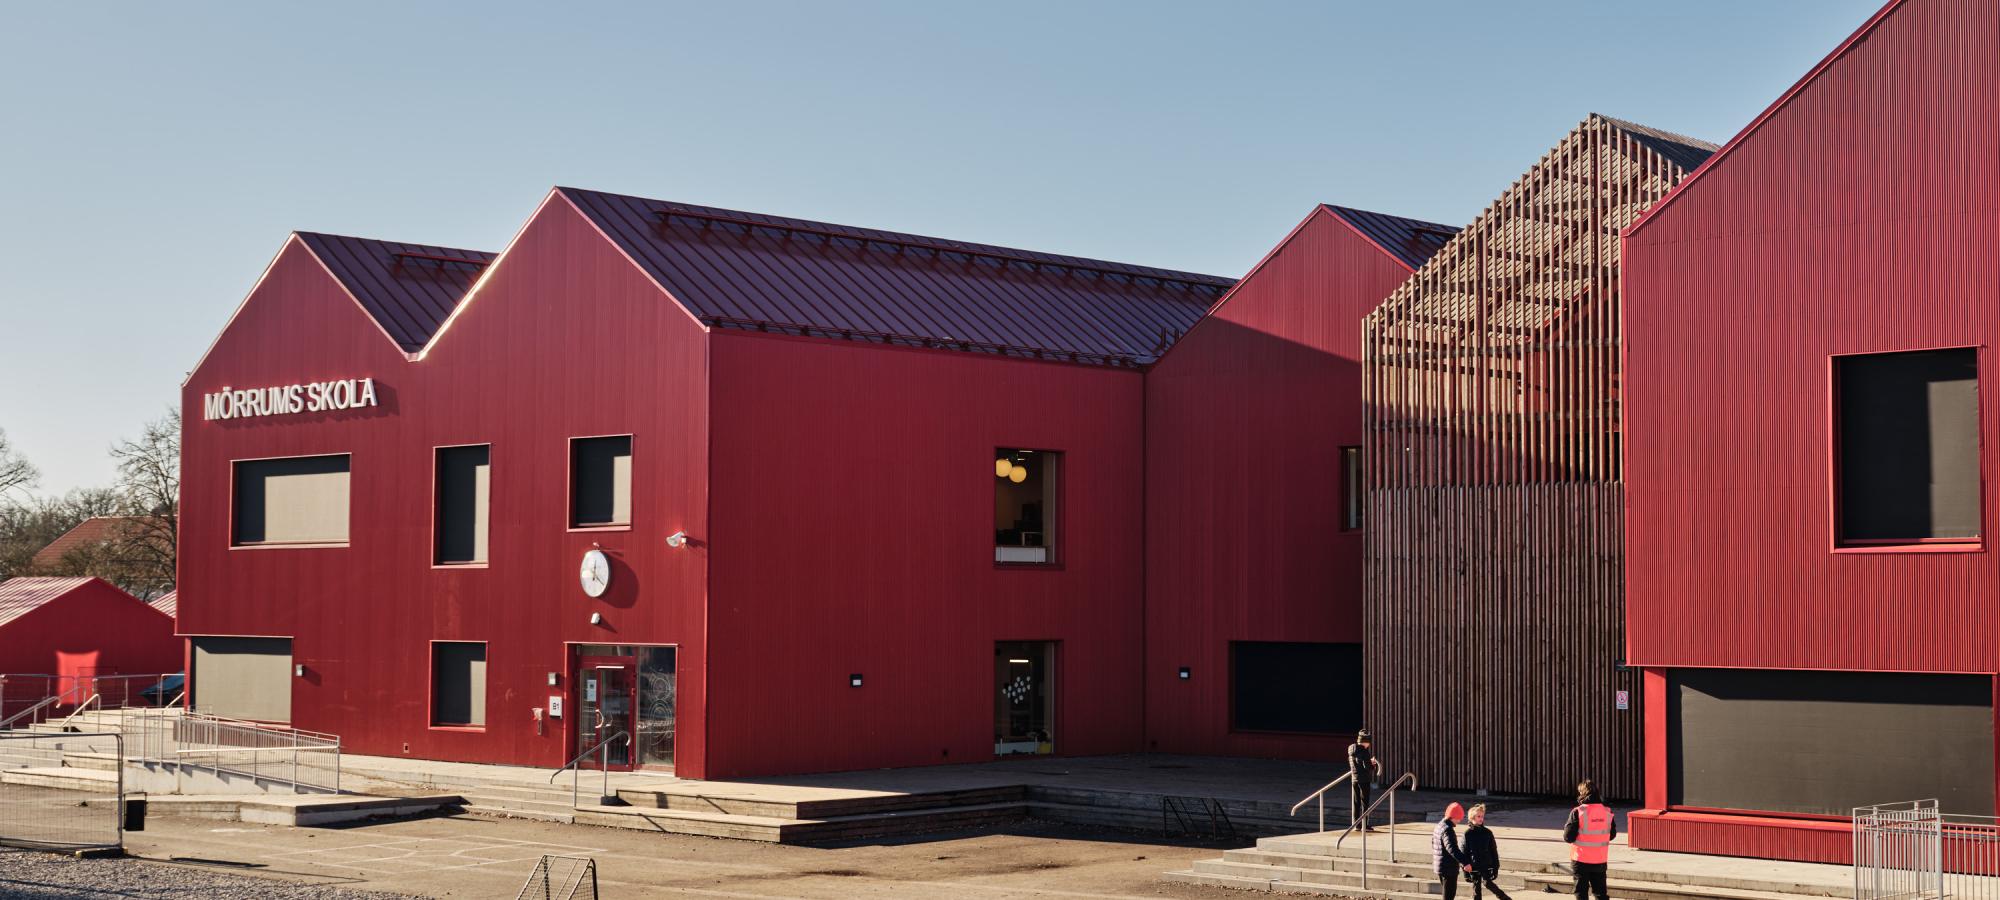 Mörrum skola är nominerad till PLÅTPRISET 2023, ett pris som hyllar innovativa byggnader med metallfasader. Priset har uppmärksammat banbrytande arkitektur och fasadlösningar sedan 2011. 